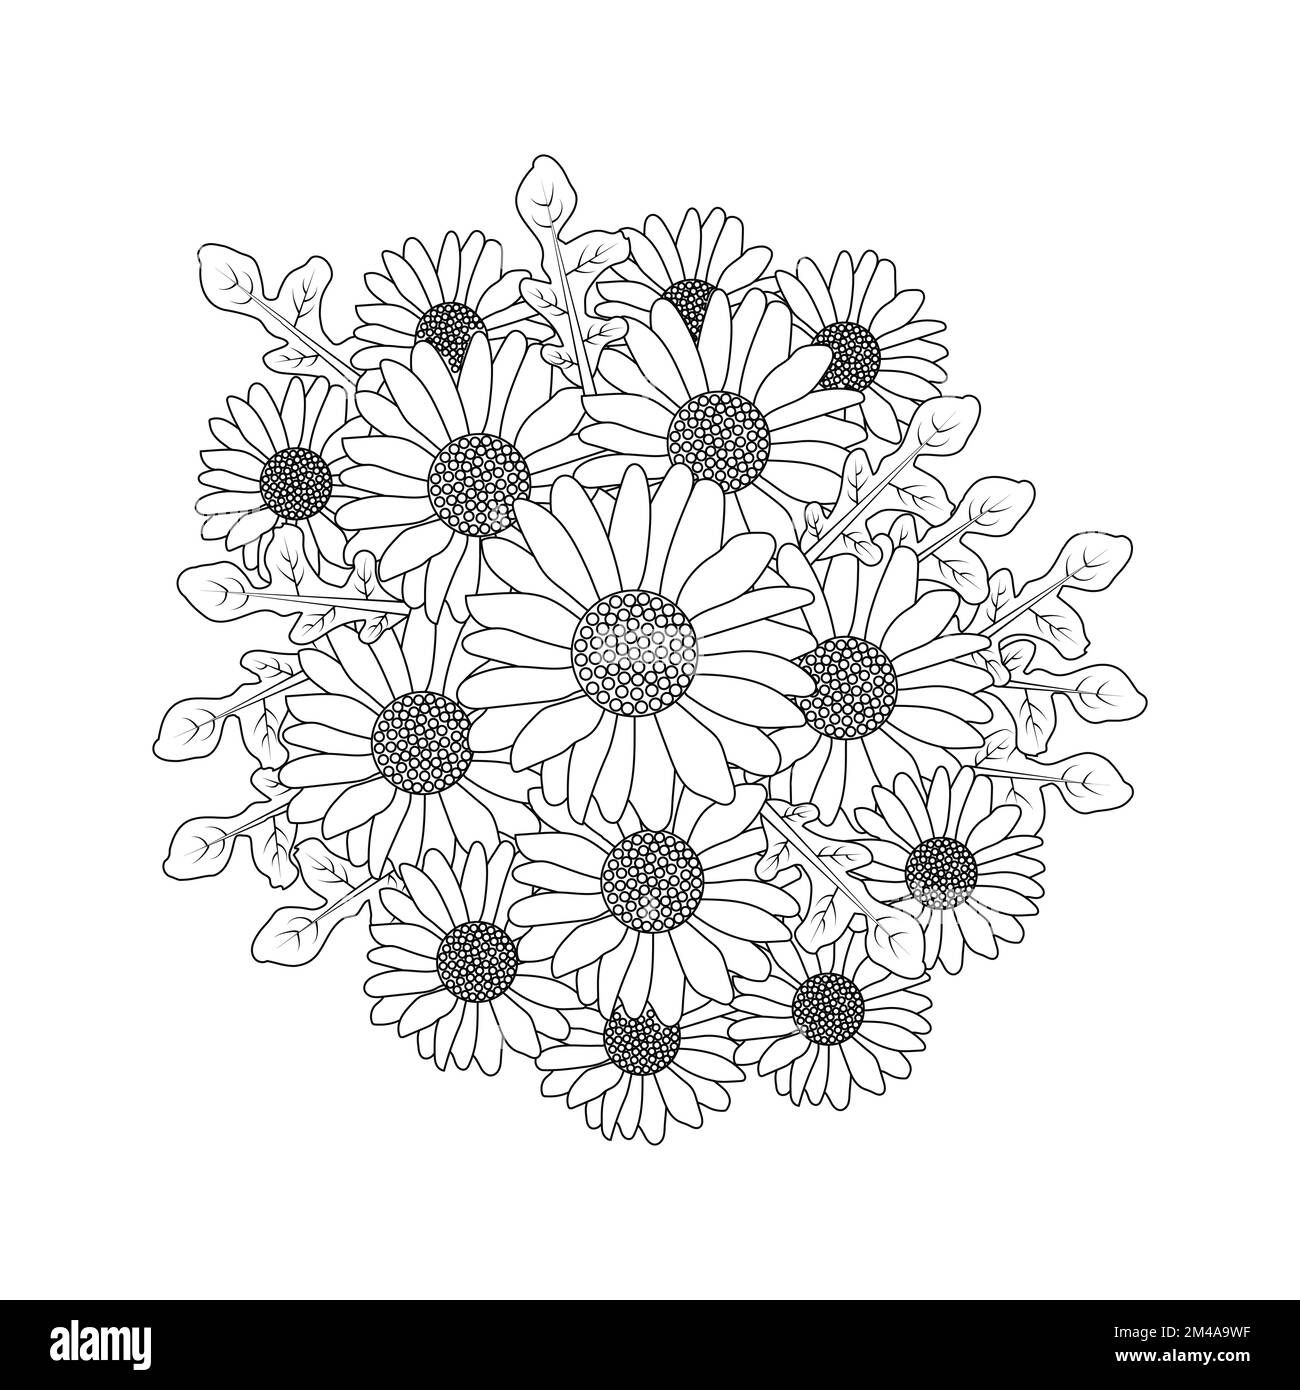 daisy fiore adulto colorazione libro pagina disegno di linea nera disegno bello daisy fiore bouquet Illustrazione Vettoriale